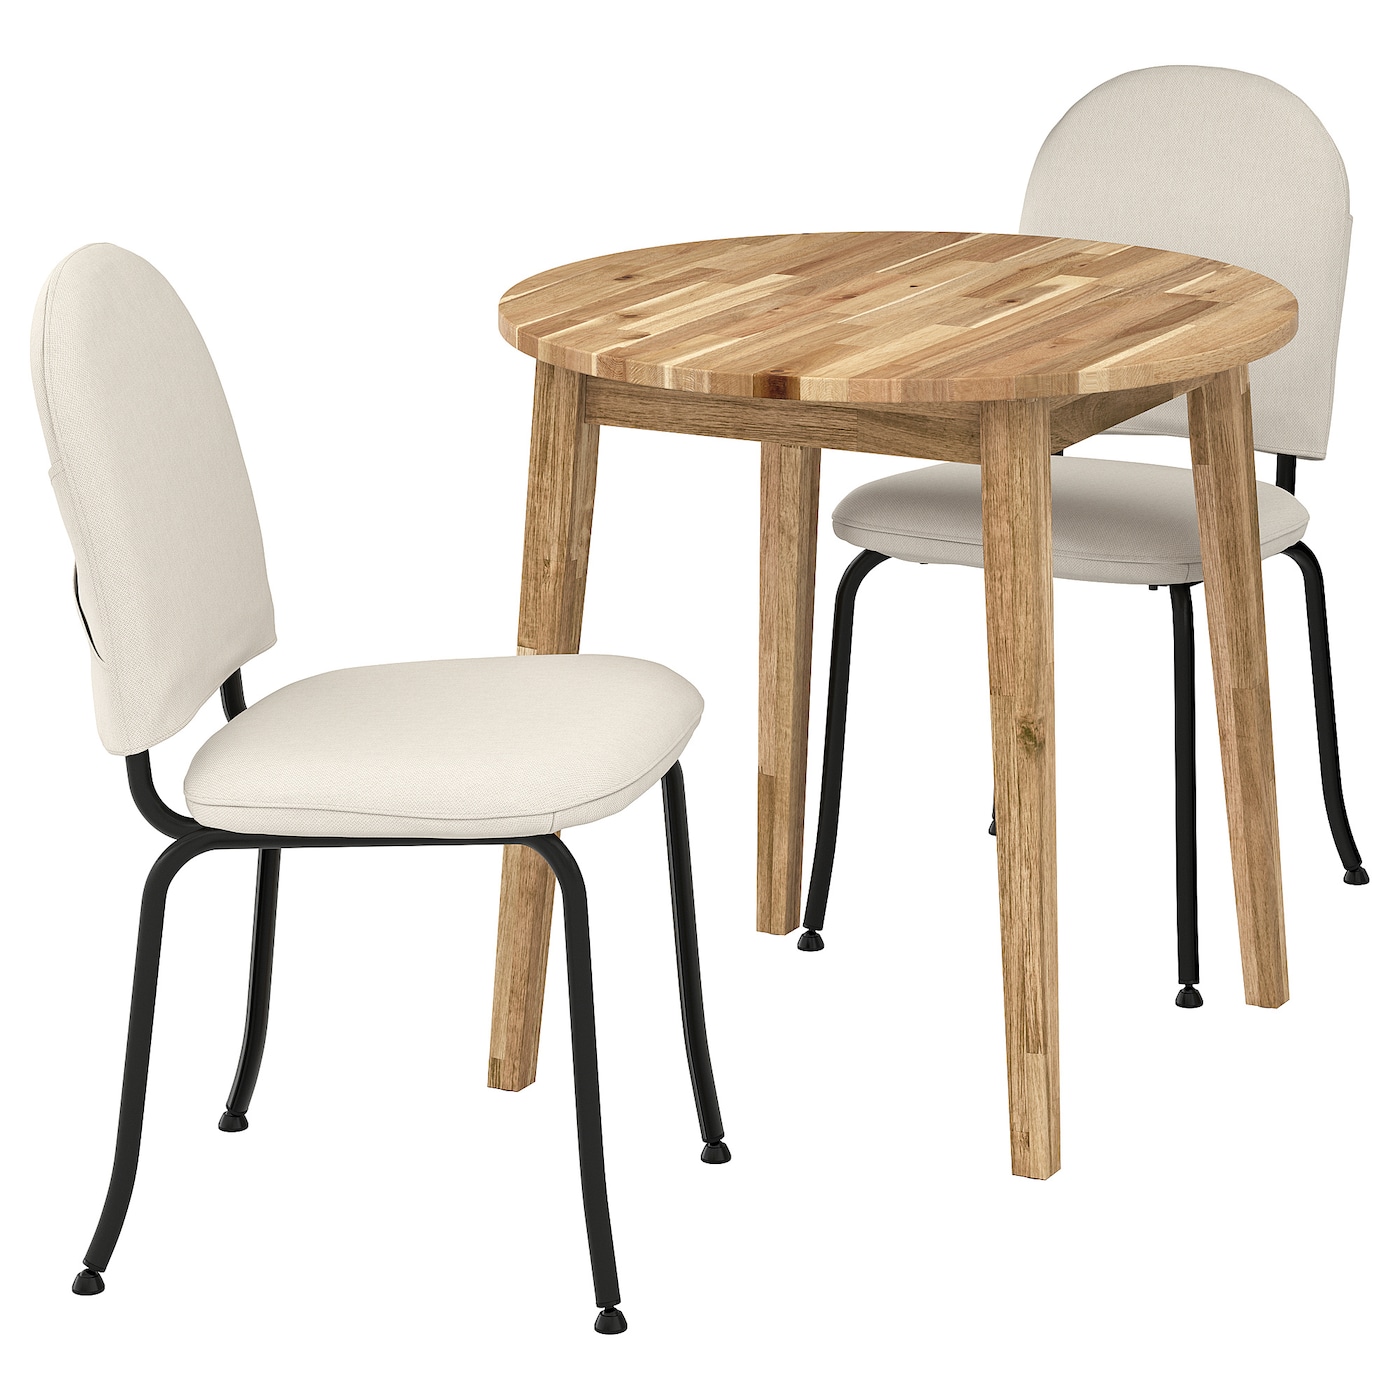 Стол и 2 стула - NACKANÄS / EBBALYCKE/ NACKANАS  IKEA/ НАКАНАС/  ЭББАЛЮККЕ ИКЕА, 80х75 см, белый /коричневый